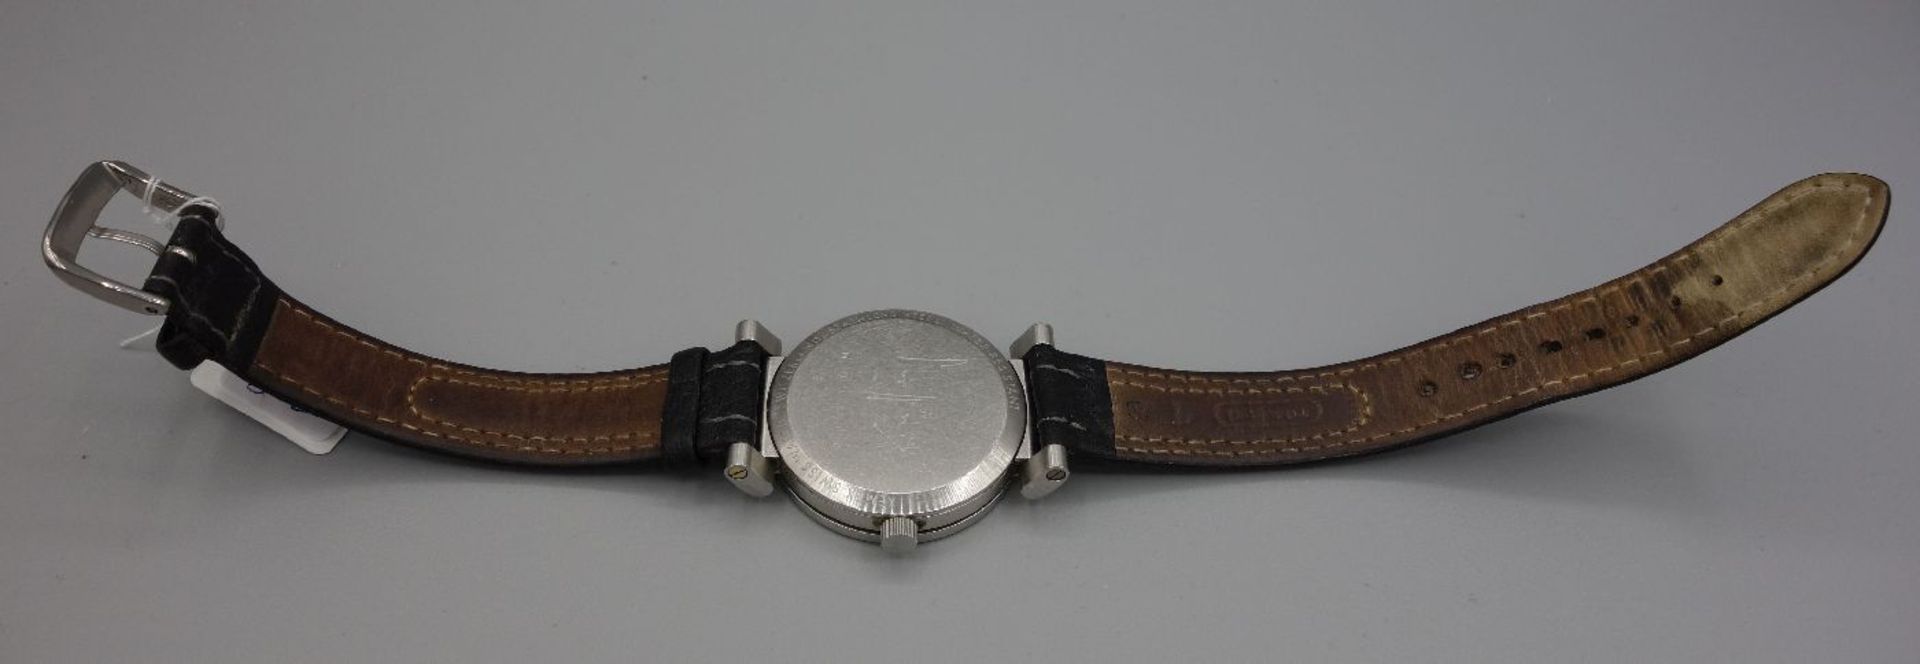 ARMBANDUHR - XEMEX OFFROAD / wristwatch, Quarz, Schweiz. Rundes Edelstahlgehäuse an schwarzem - Bild 5 aus 7